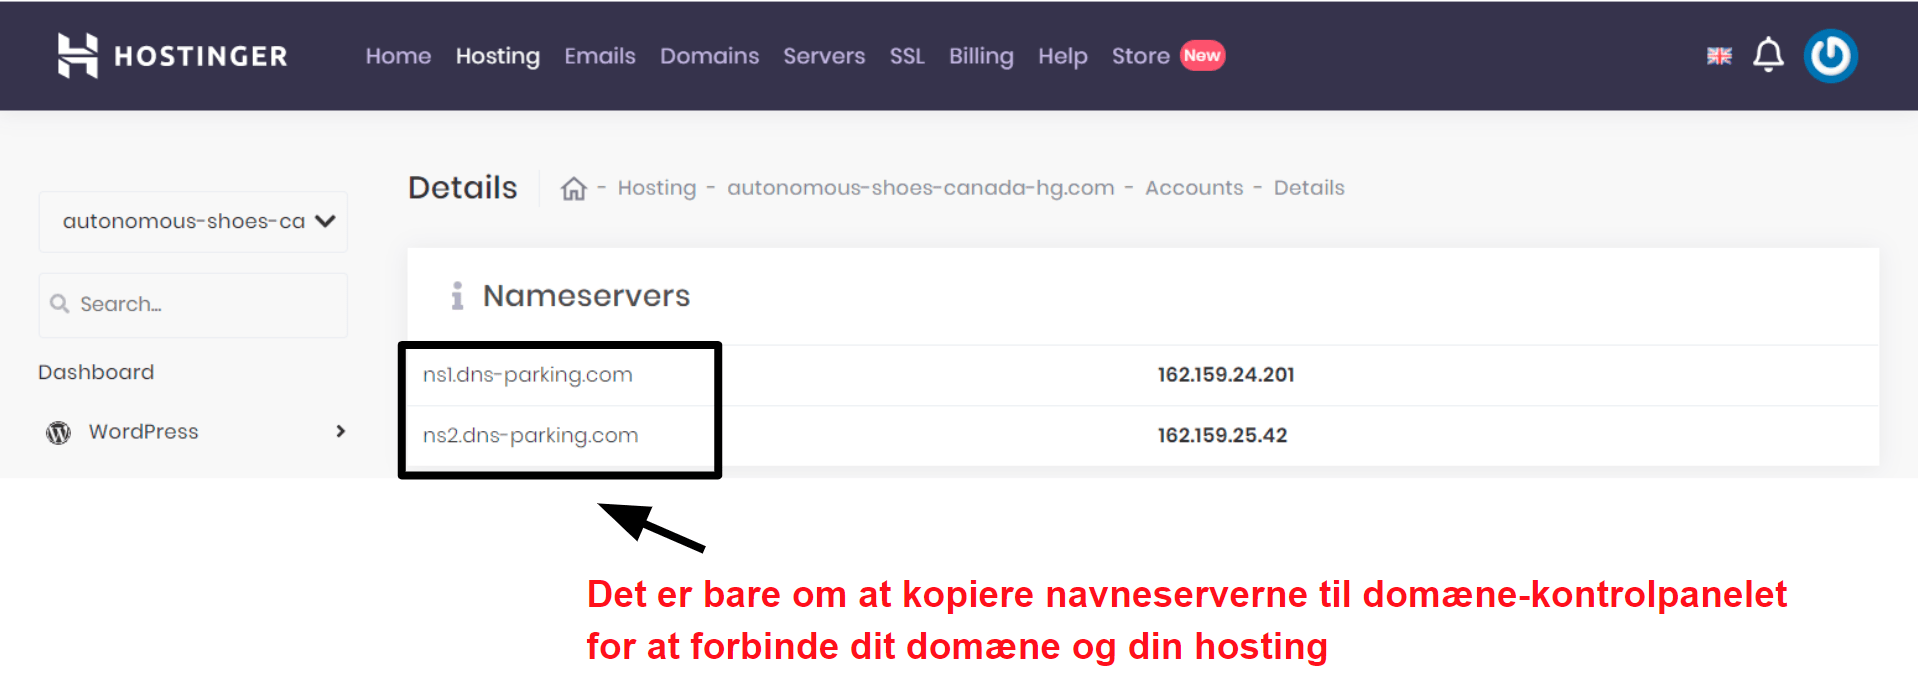 Hostinger domain connection information_DA